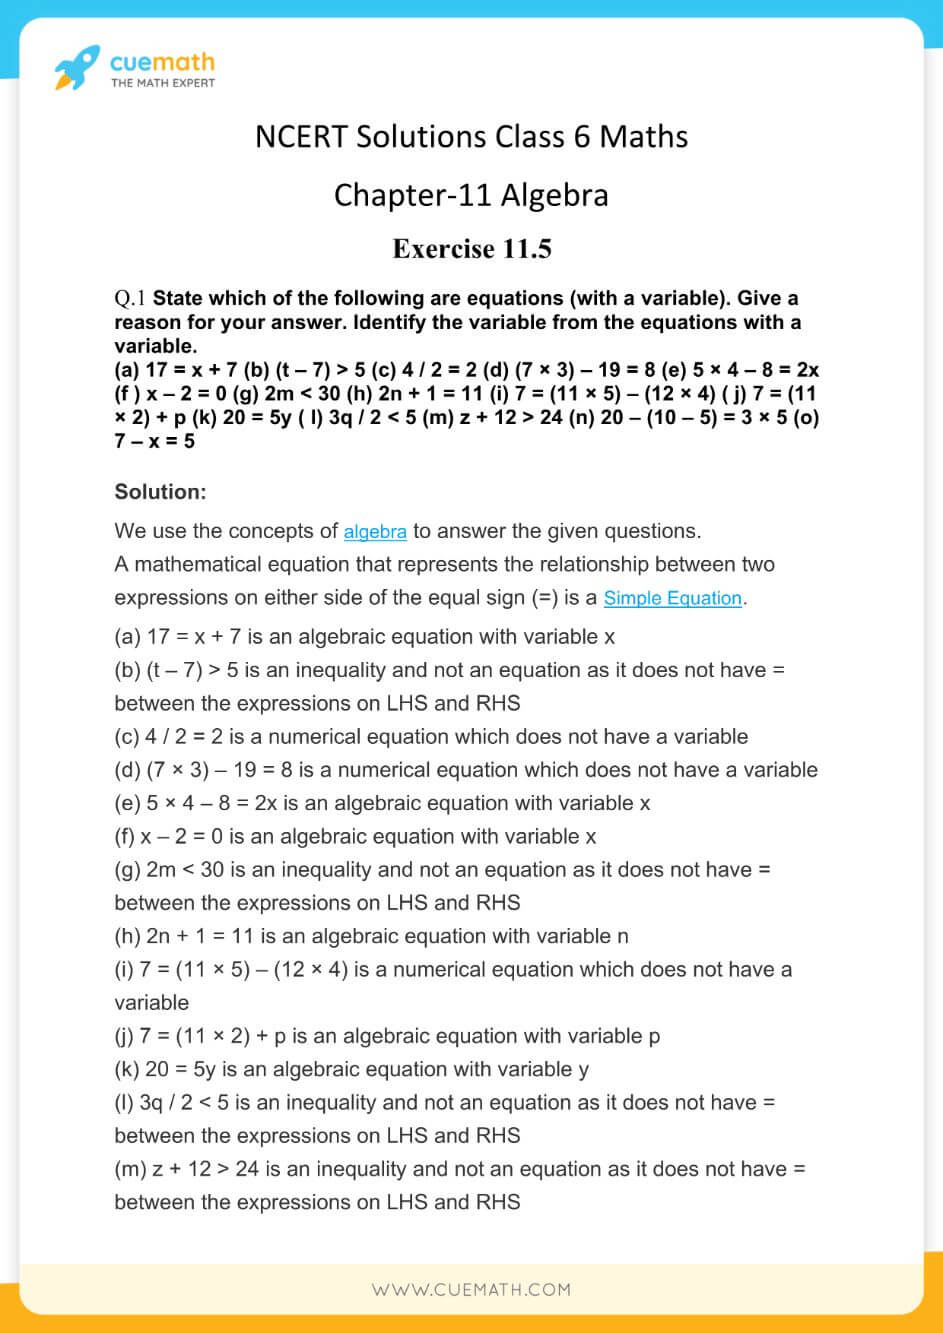 NCERT Solutions Class 6 Maths Chapter 11-18